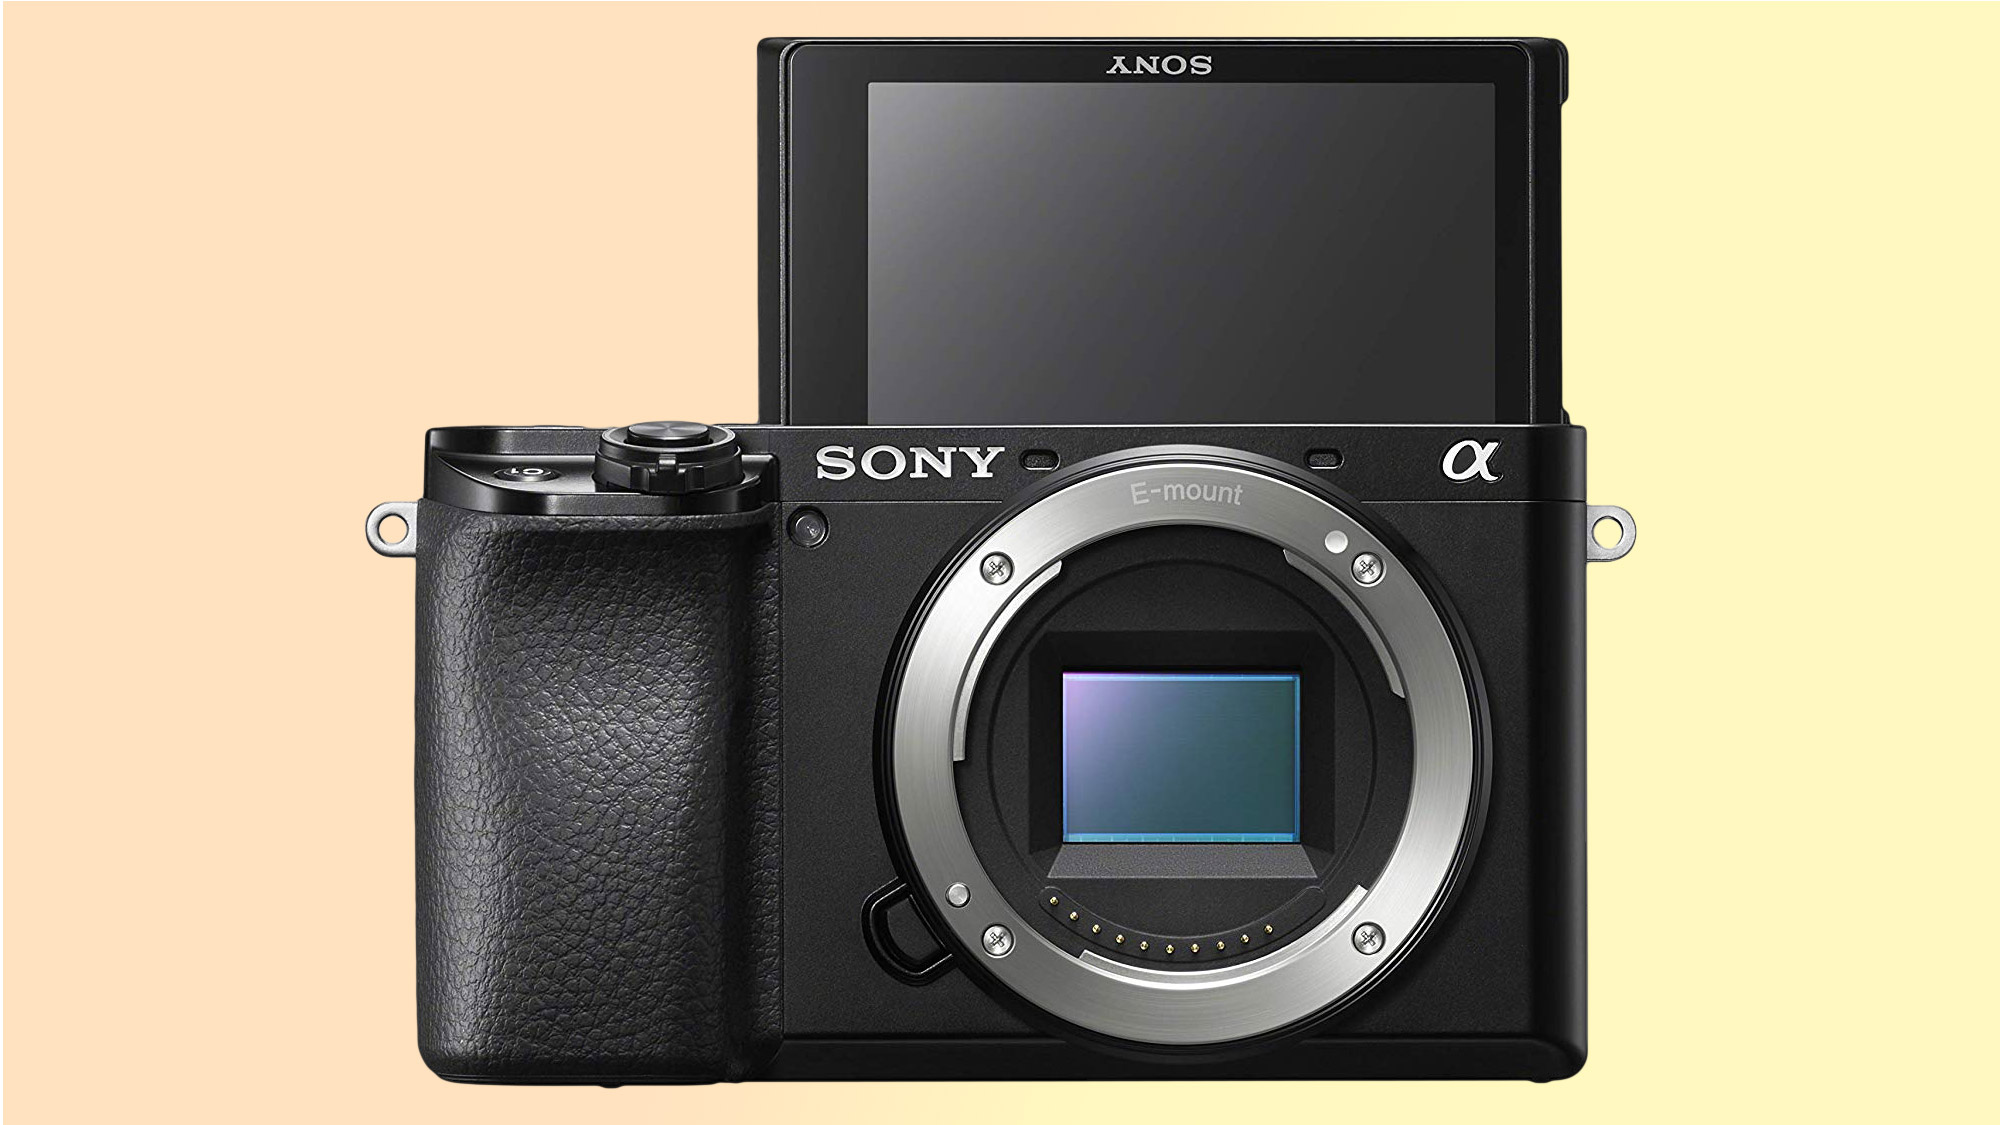 DSLR vs. mirrorless cameras: Sony a6000